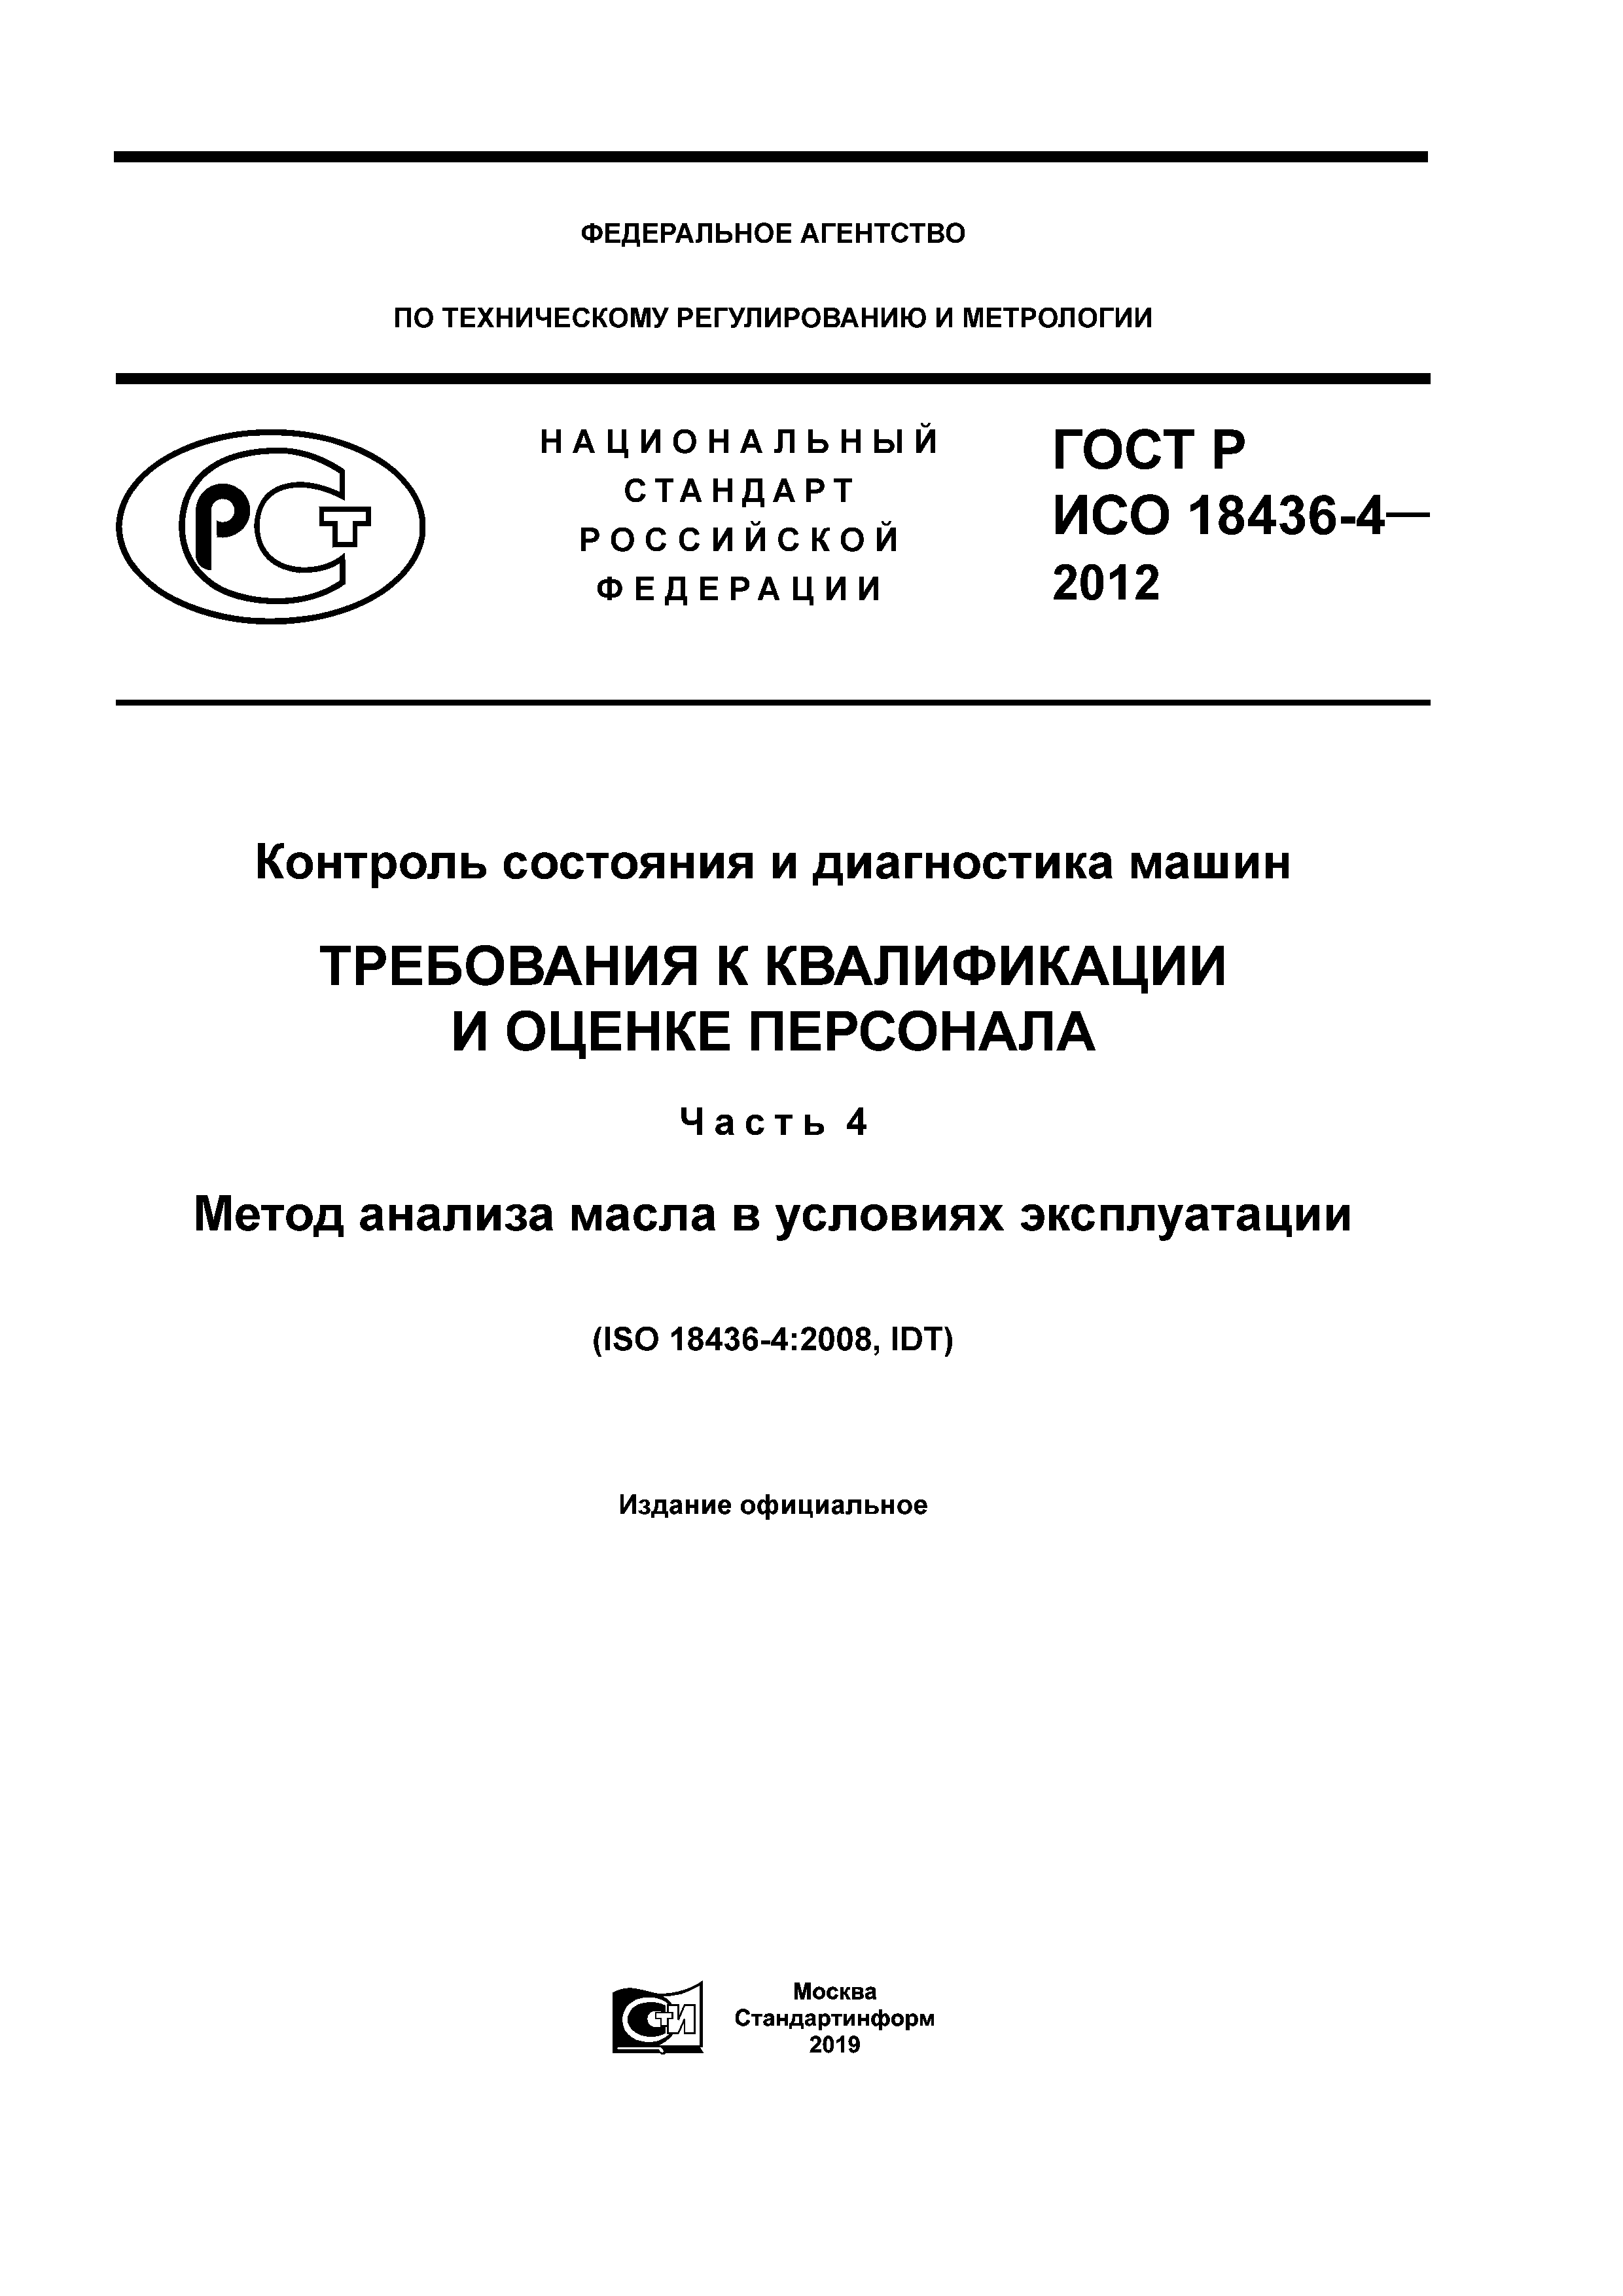 ГОСТ Р ИСО 18436-4-2012